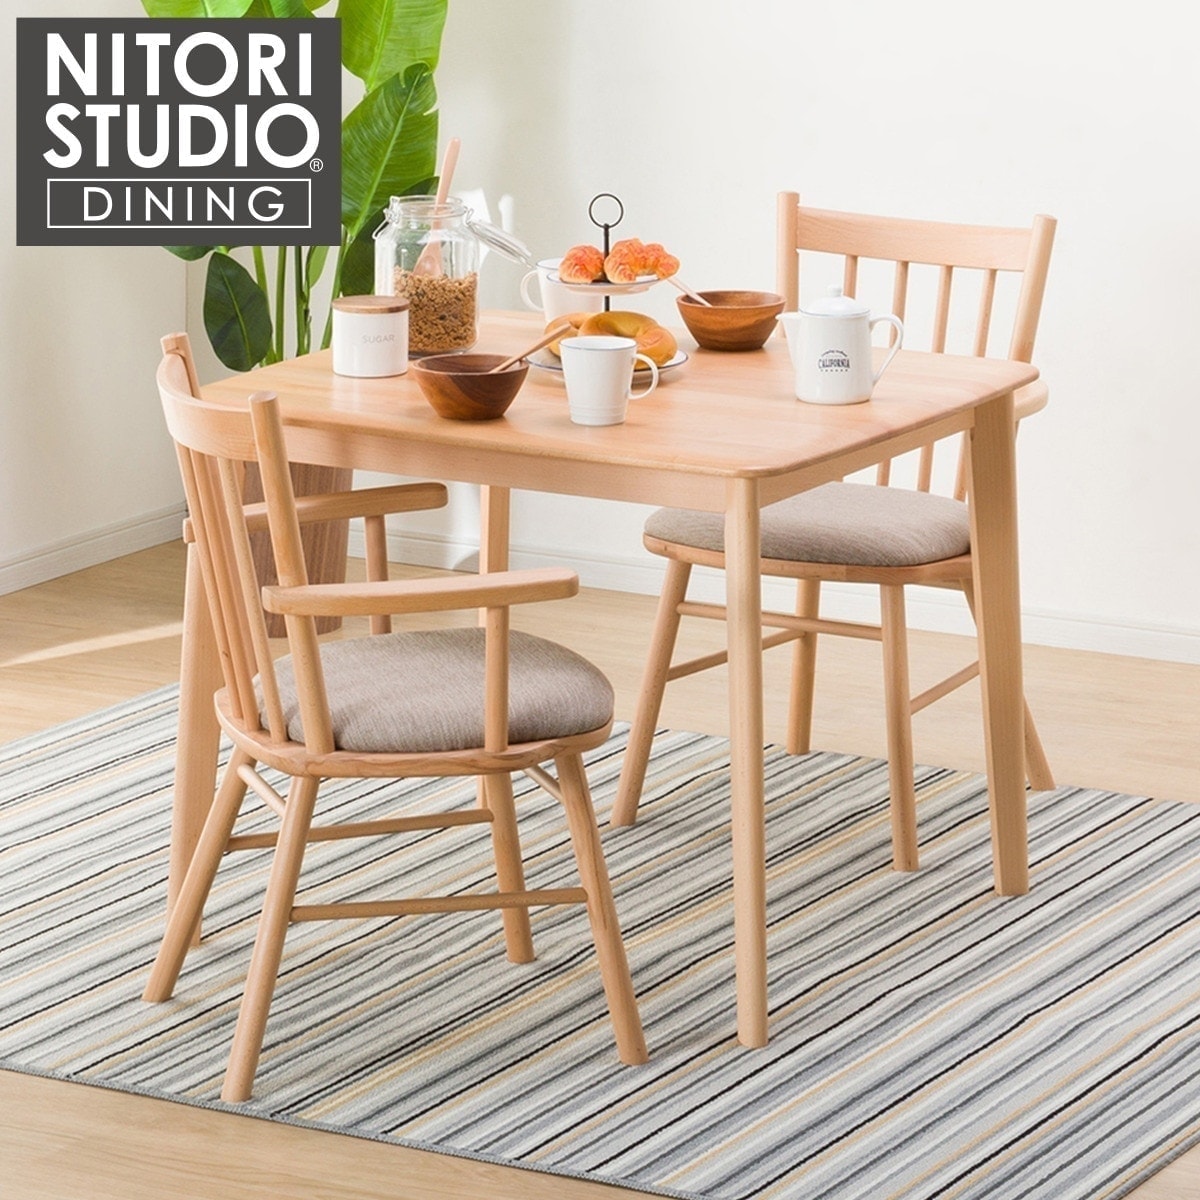 NITORI ニトリ ダイニングセット テーブル チェア DTGK120 家具 - 机 